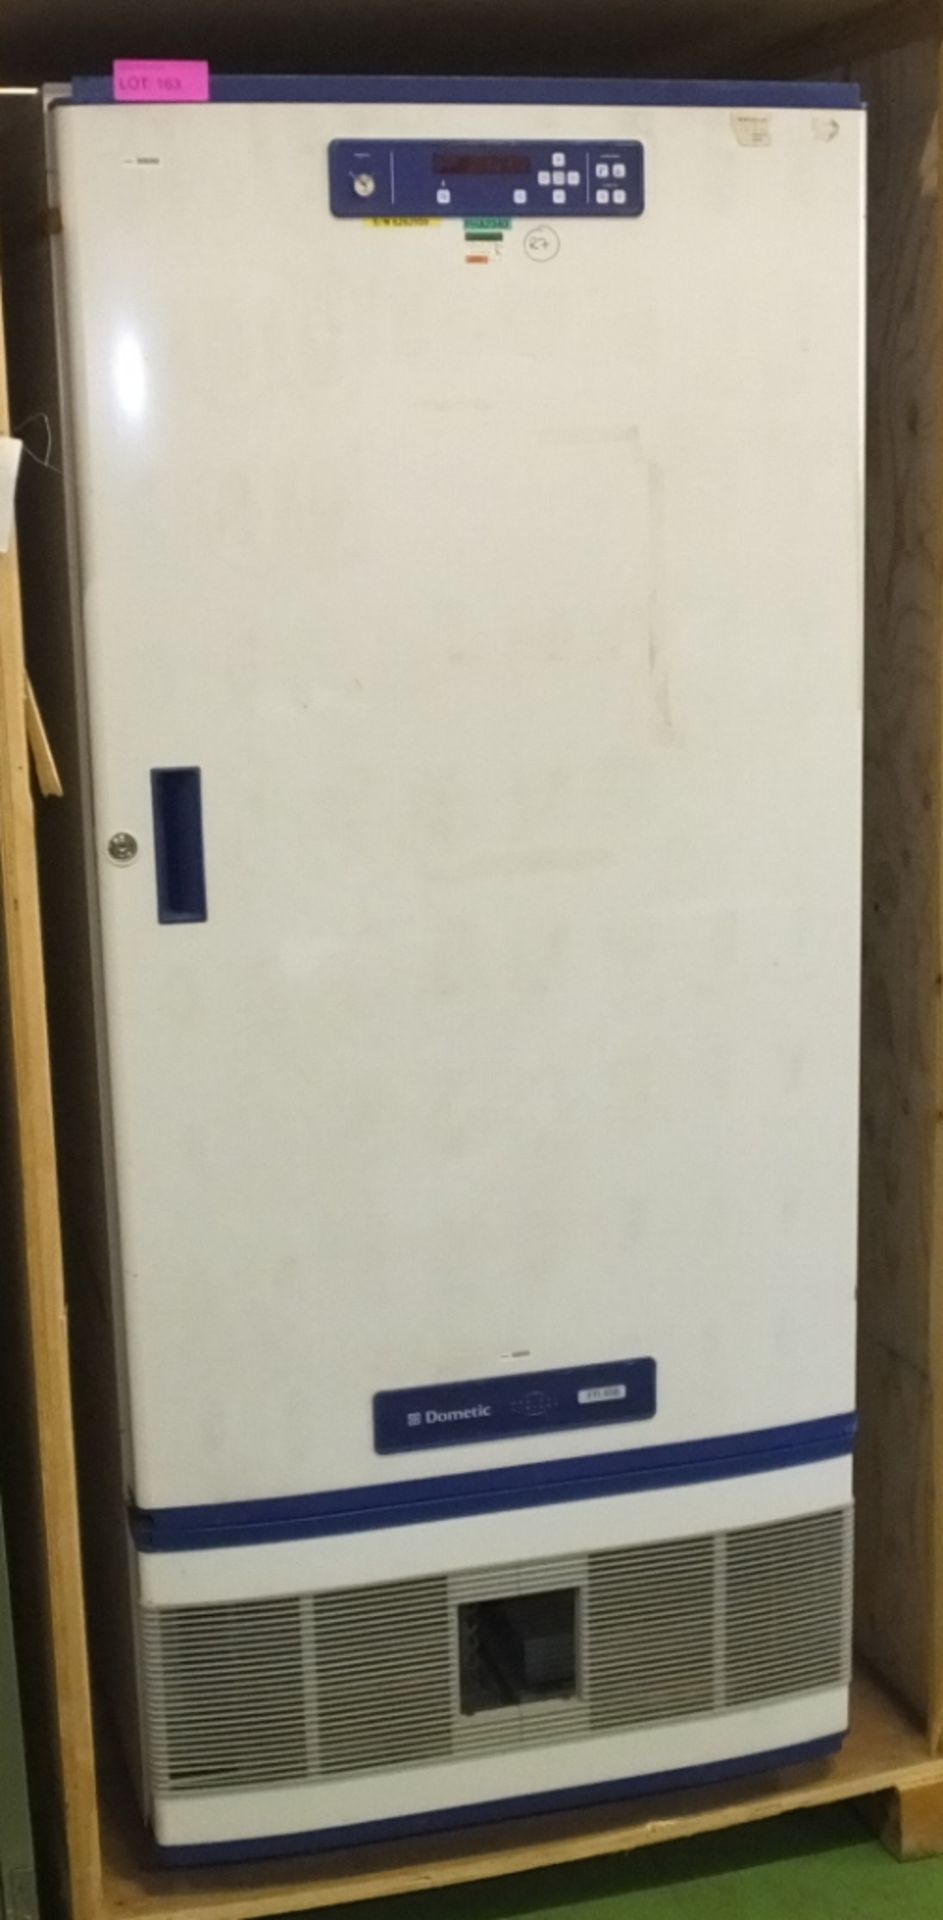 Dometic FR400 Refrigerator Laboratory L850 x W800 x H1920mm